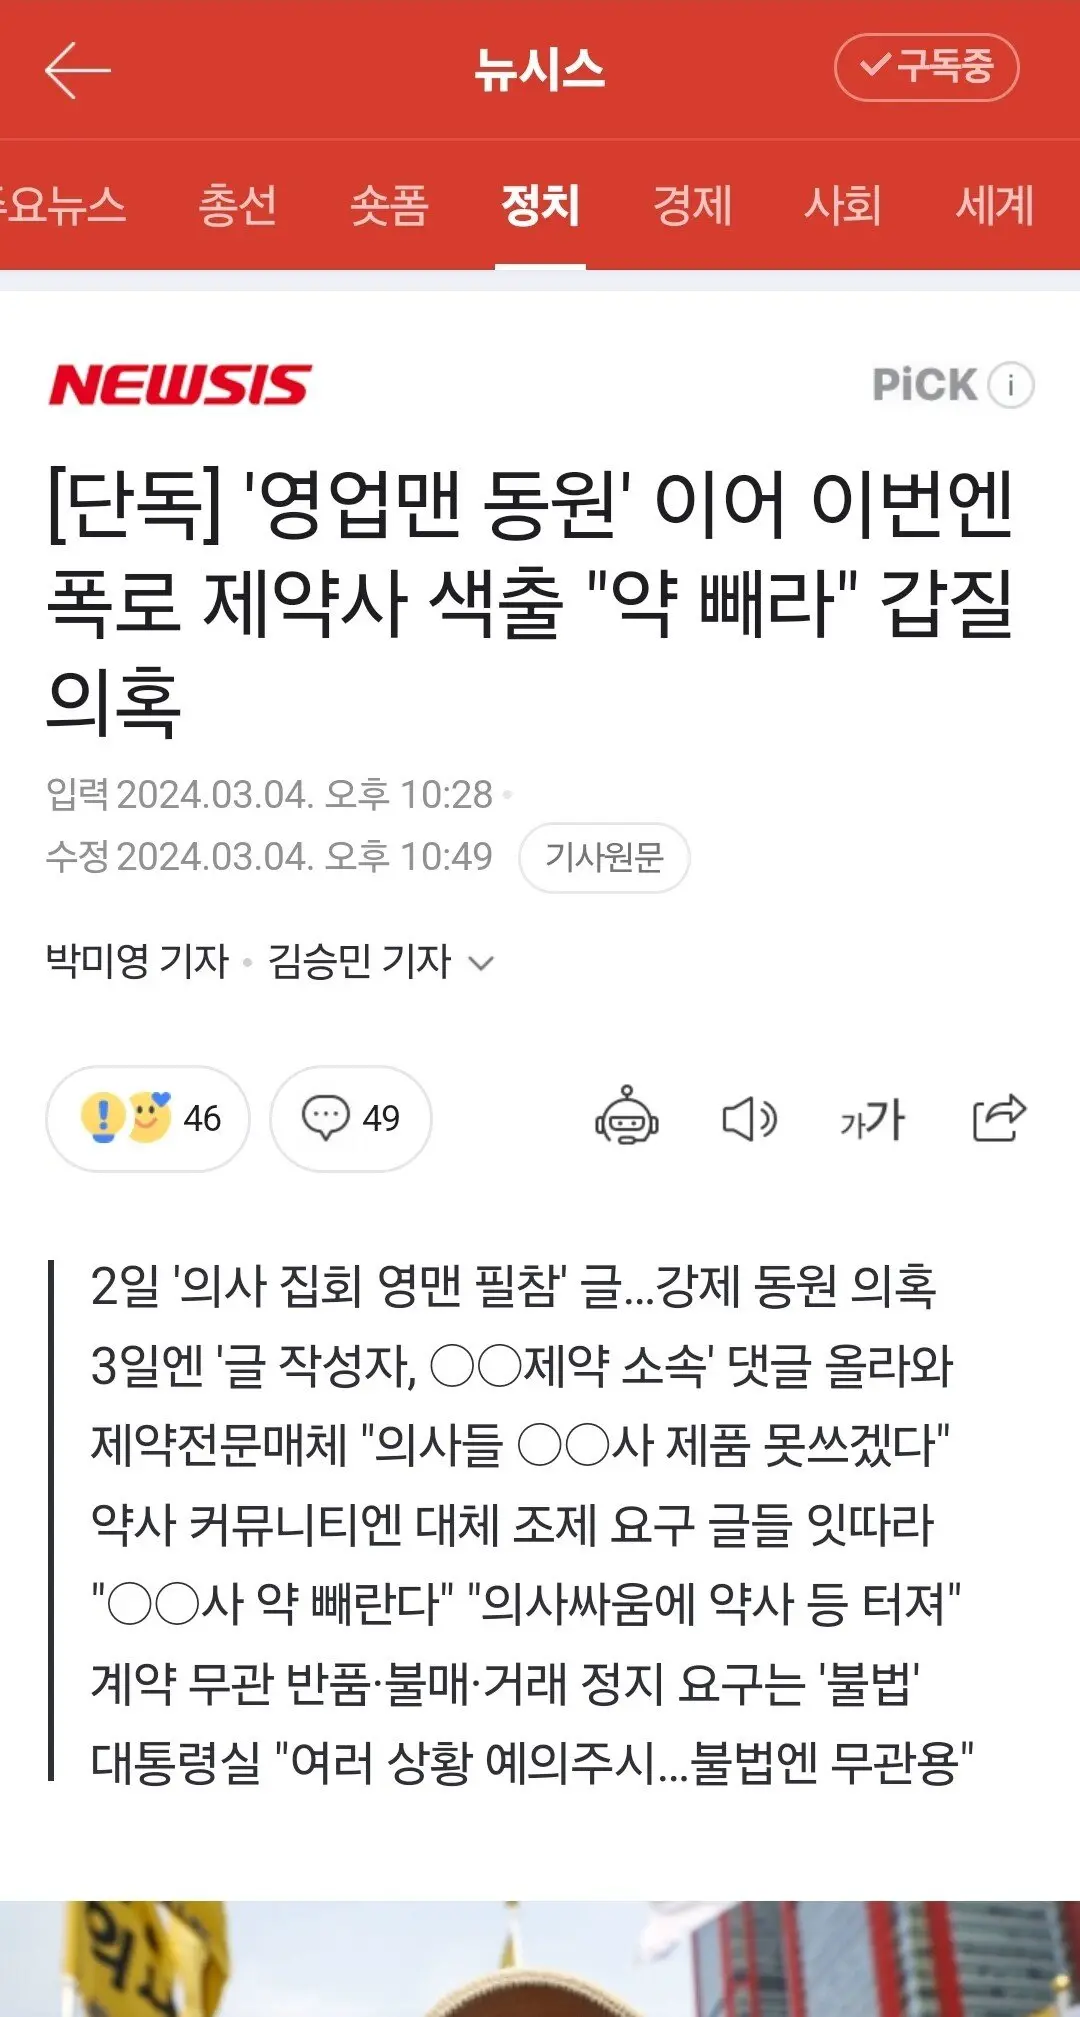 '영업맨 동원' 이어 이번엔 폭로 제약사 색출 